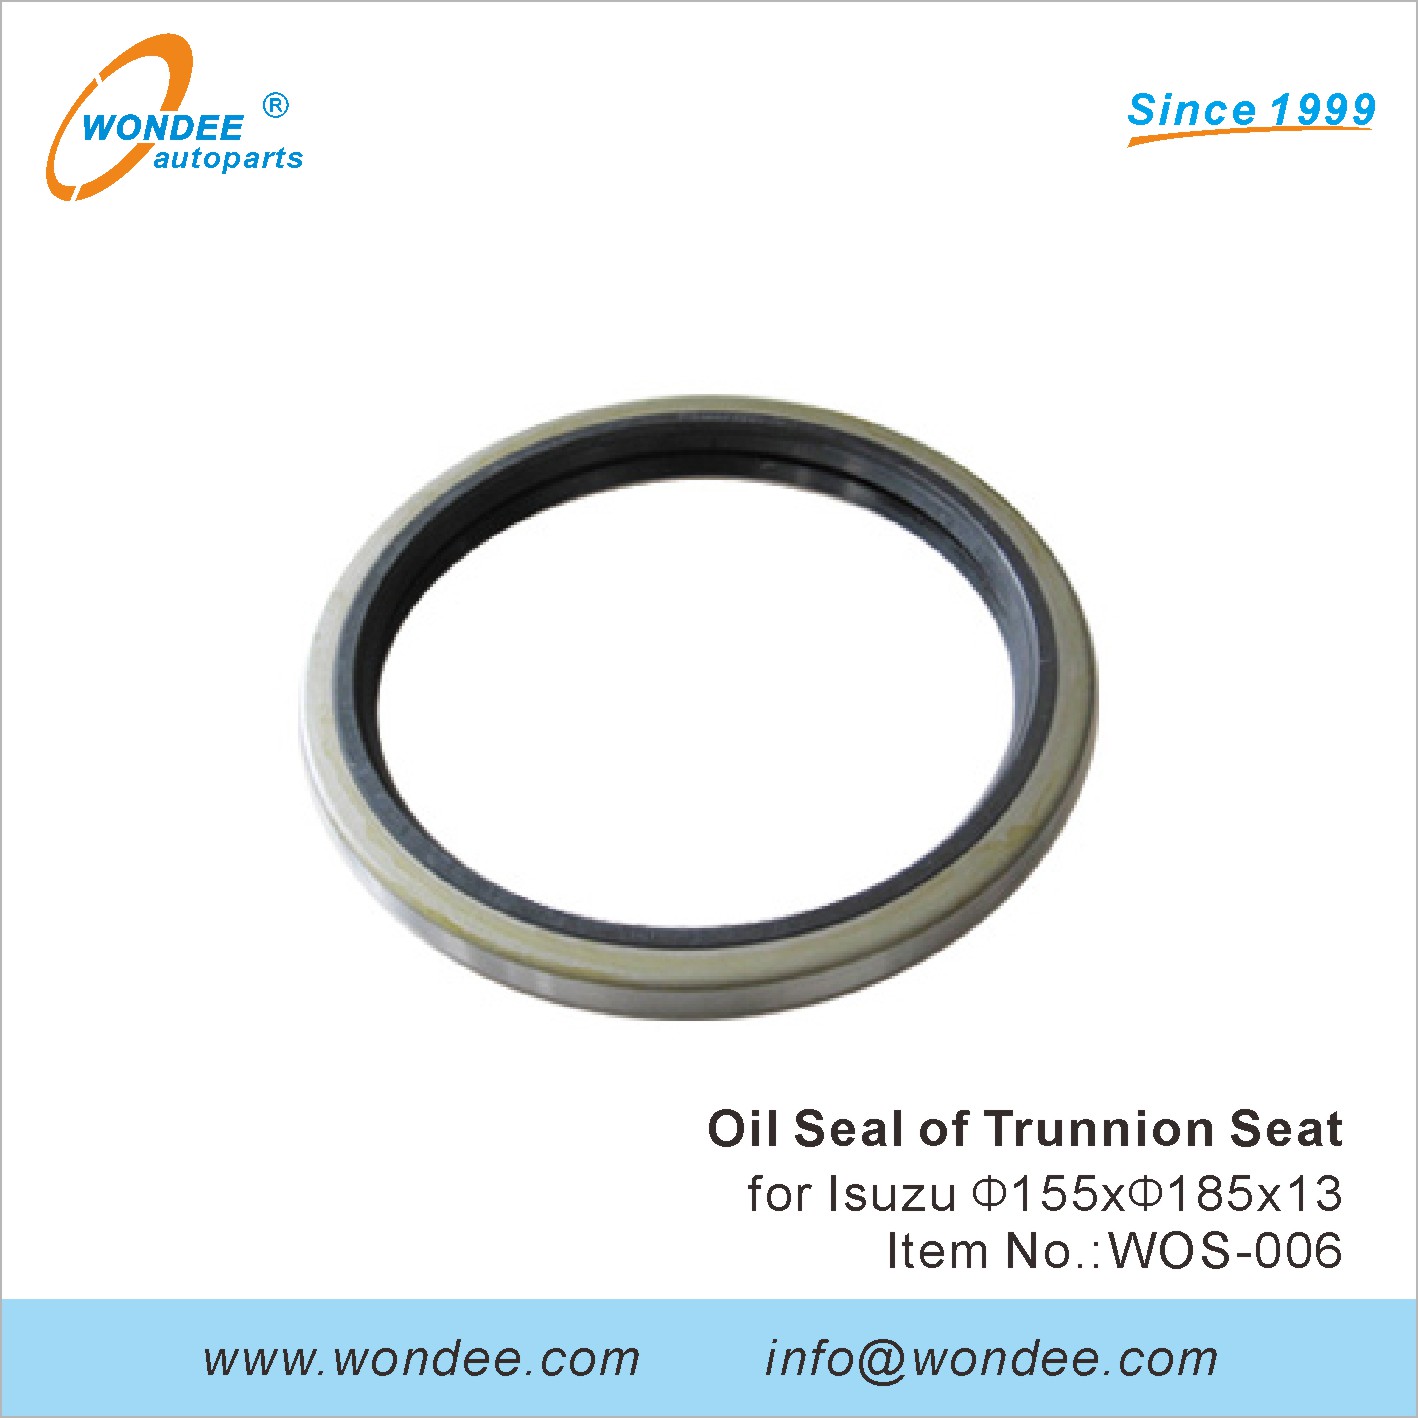 WONDEE oil seal of trunnion seat (6)